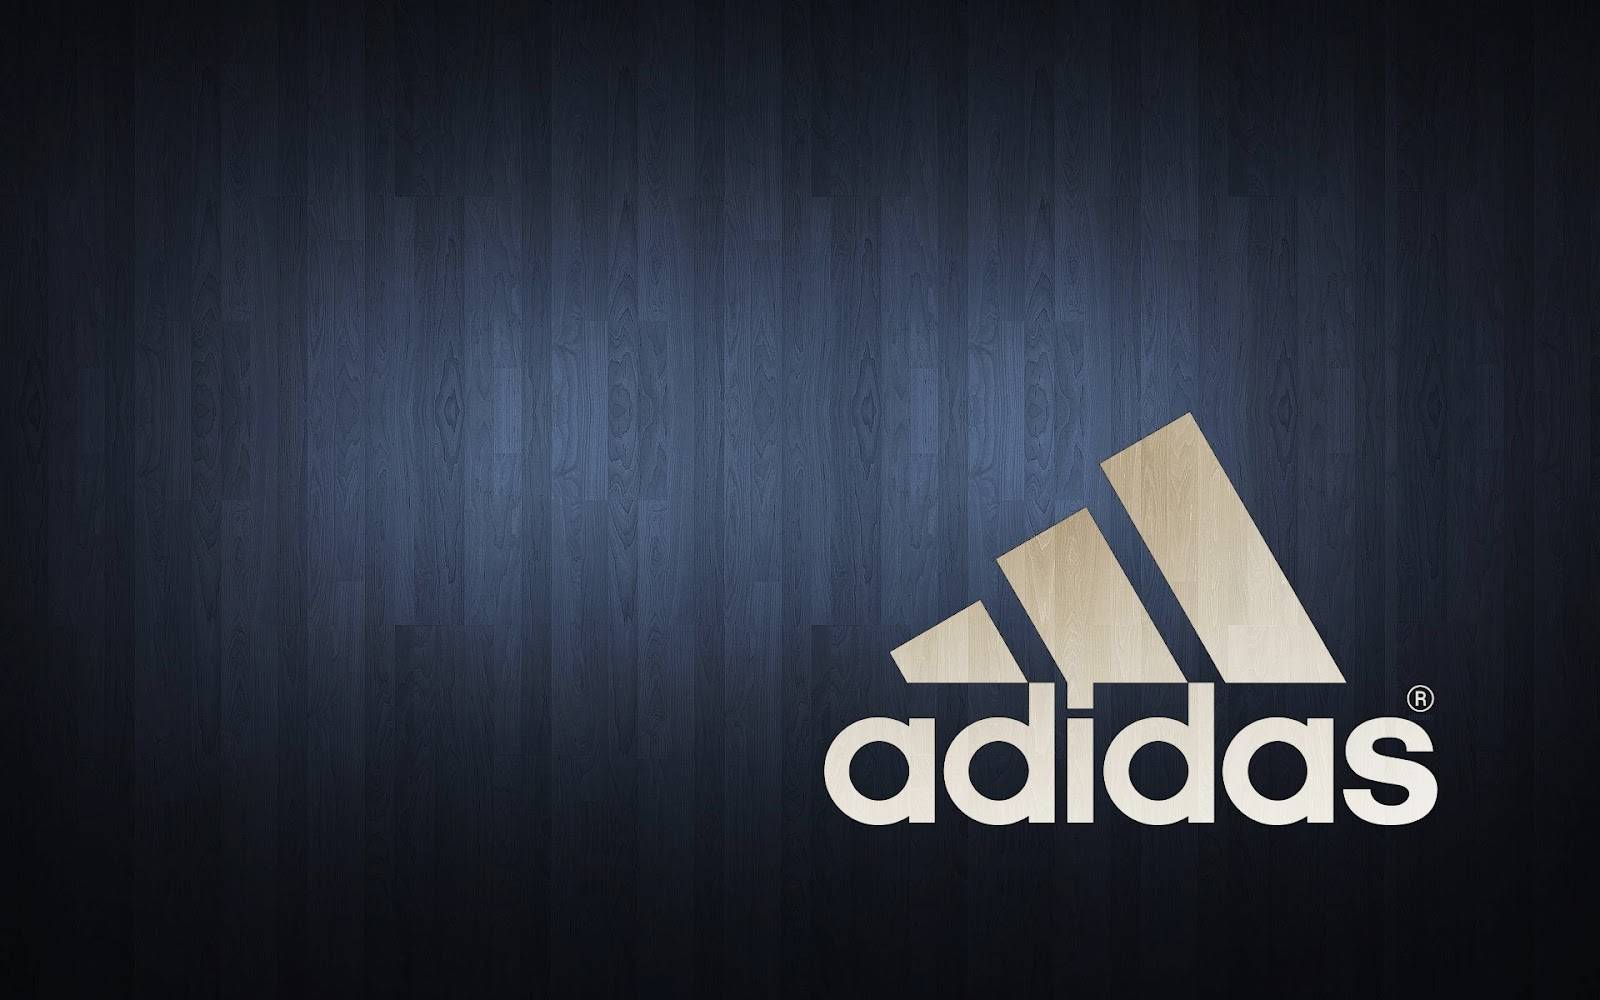 Current Adidas Logos